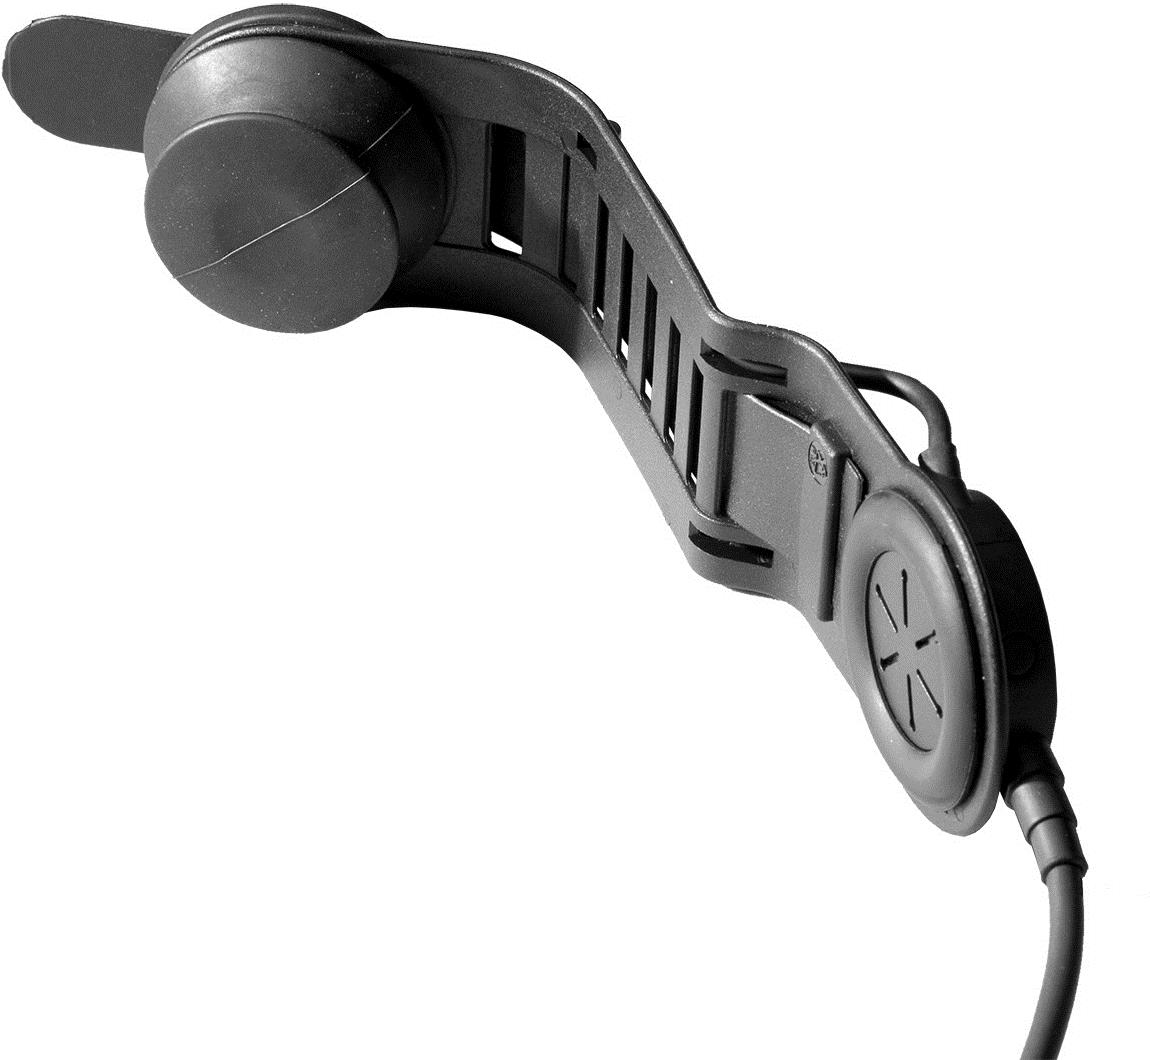 Savox HC-1 Helmgarnitur, Schädeldeckenmikro mit kurzem Bügel, IP56, Spiralkabel, Nexus 1 Hörer (verbessert), vibrationsempfindliches Knochenschall-mikrofon, mit Nexus Schnelltrennstecker zum Anschlusseiner PTT-Einheit mit Funkgerätestecker (bitte separatbestellen) (L52000)